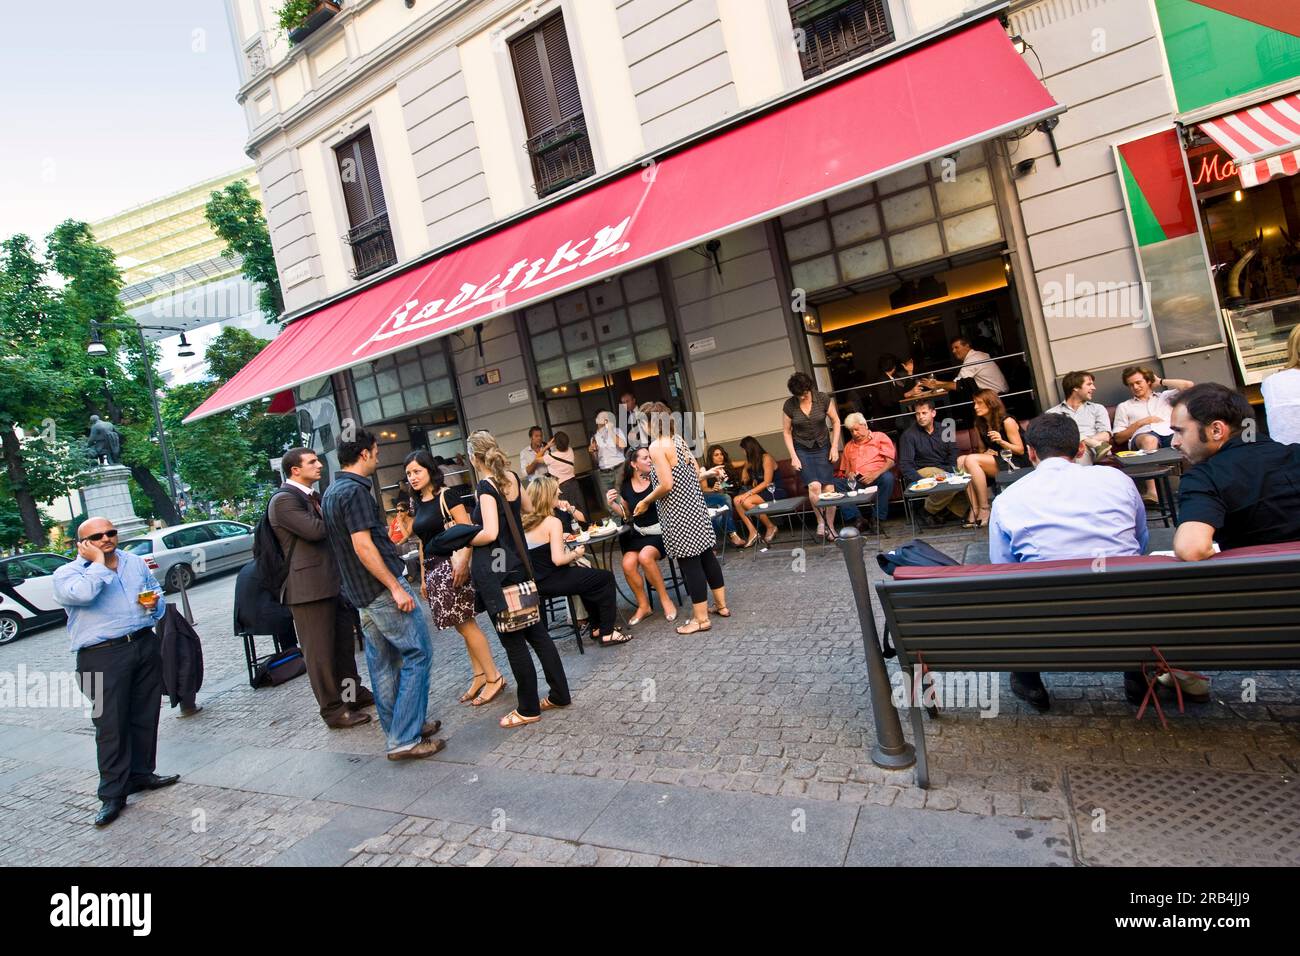 Radetzky cafe. corso garibaldi. Milan. Lombardy. Italy Stock Photo